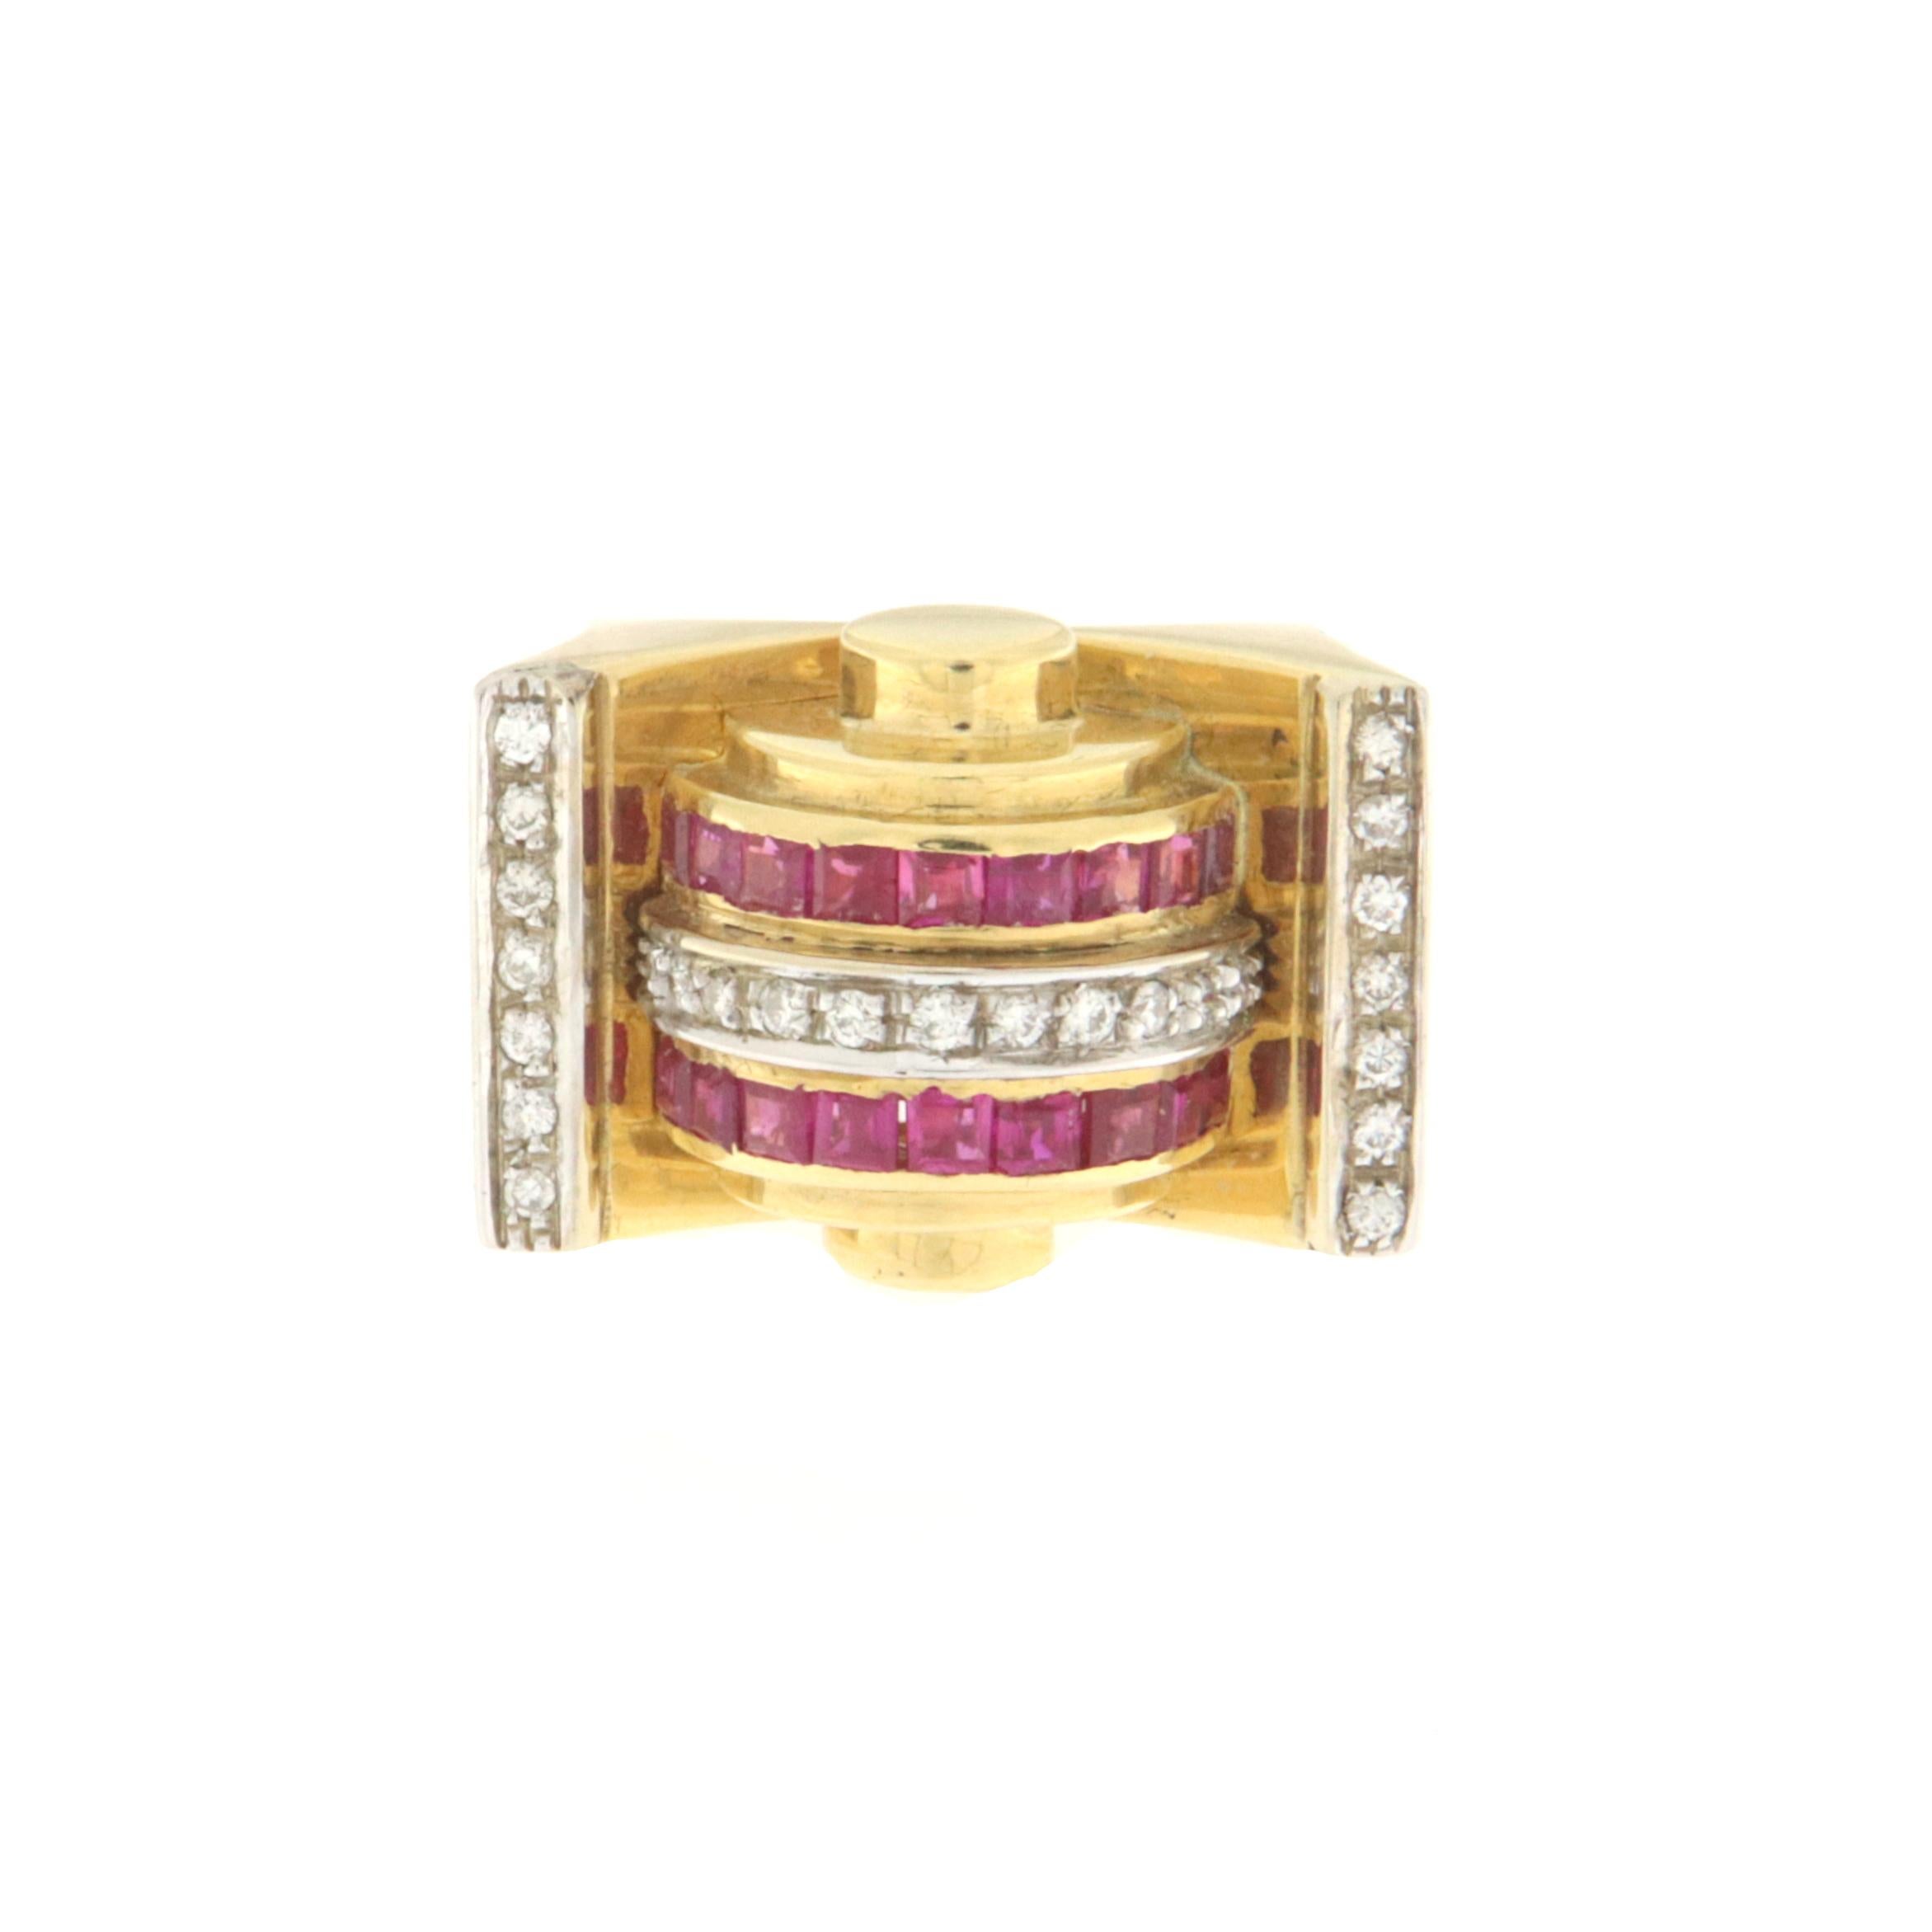 Dieser exklusive Ring aus 18-karätigem Gelbgold ist ein Meisterwerk an Eleganz und Charme, perfekt für alle, die auf der Suche nach einem unverwechselbaren Schmuckstück sind. Die Struktur des Gelbgoldes, das wegen seiner warmen und satten Farbe